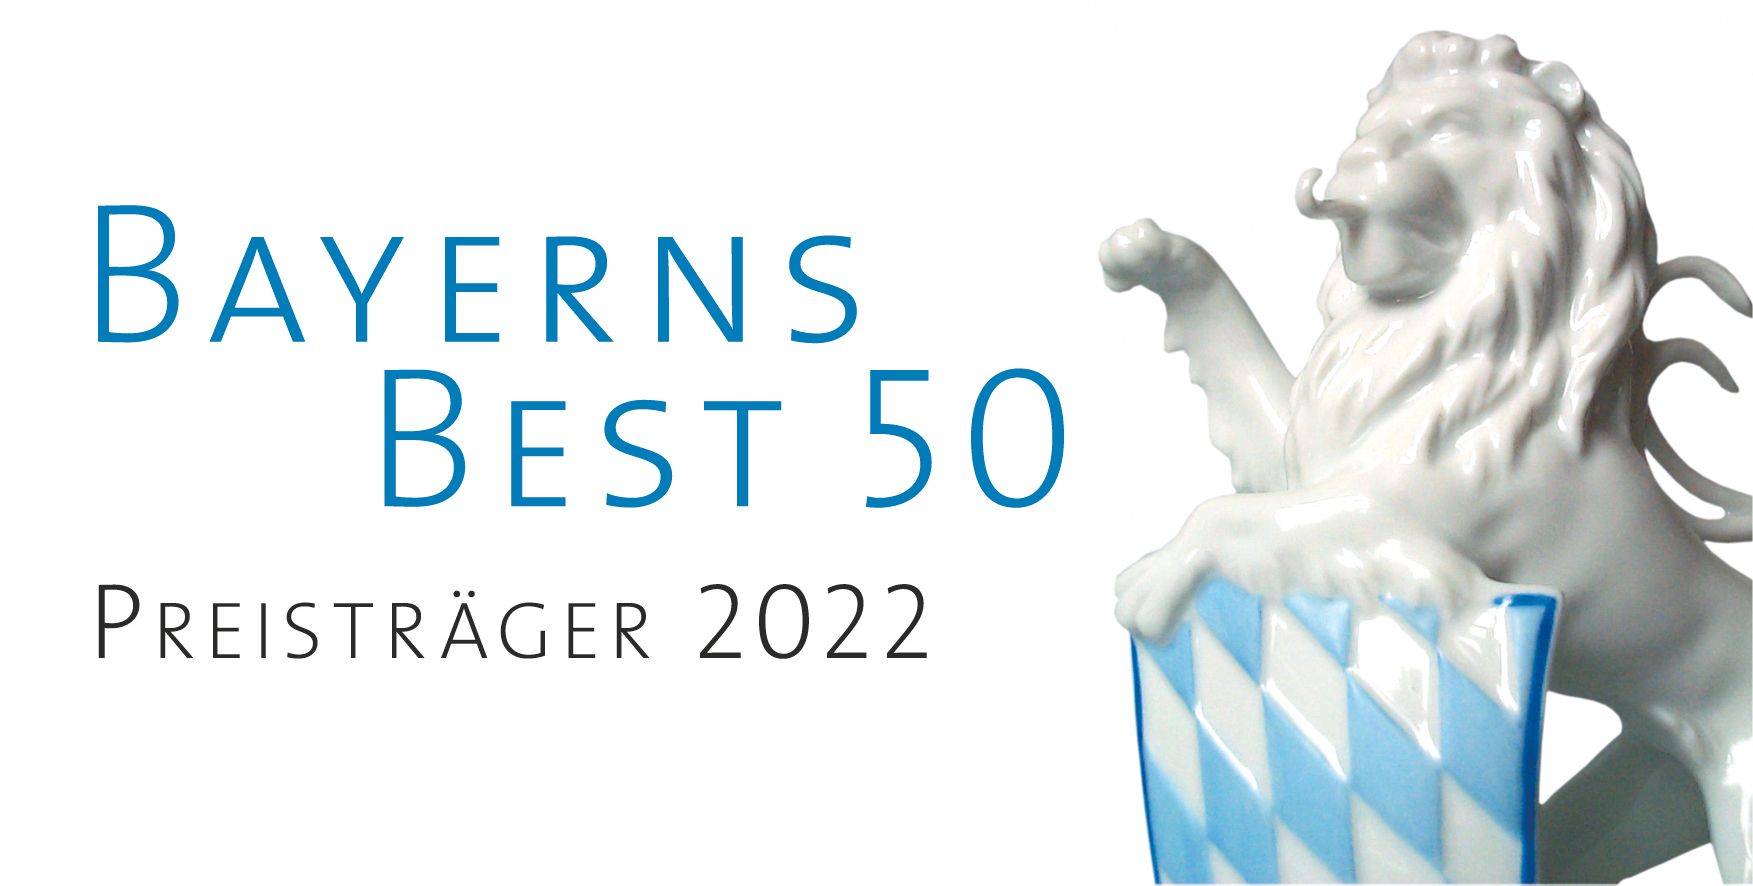 Bayerns best 50